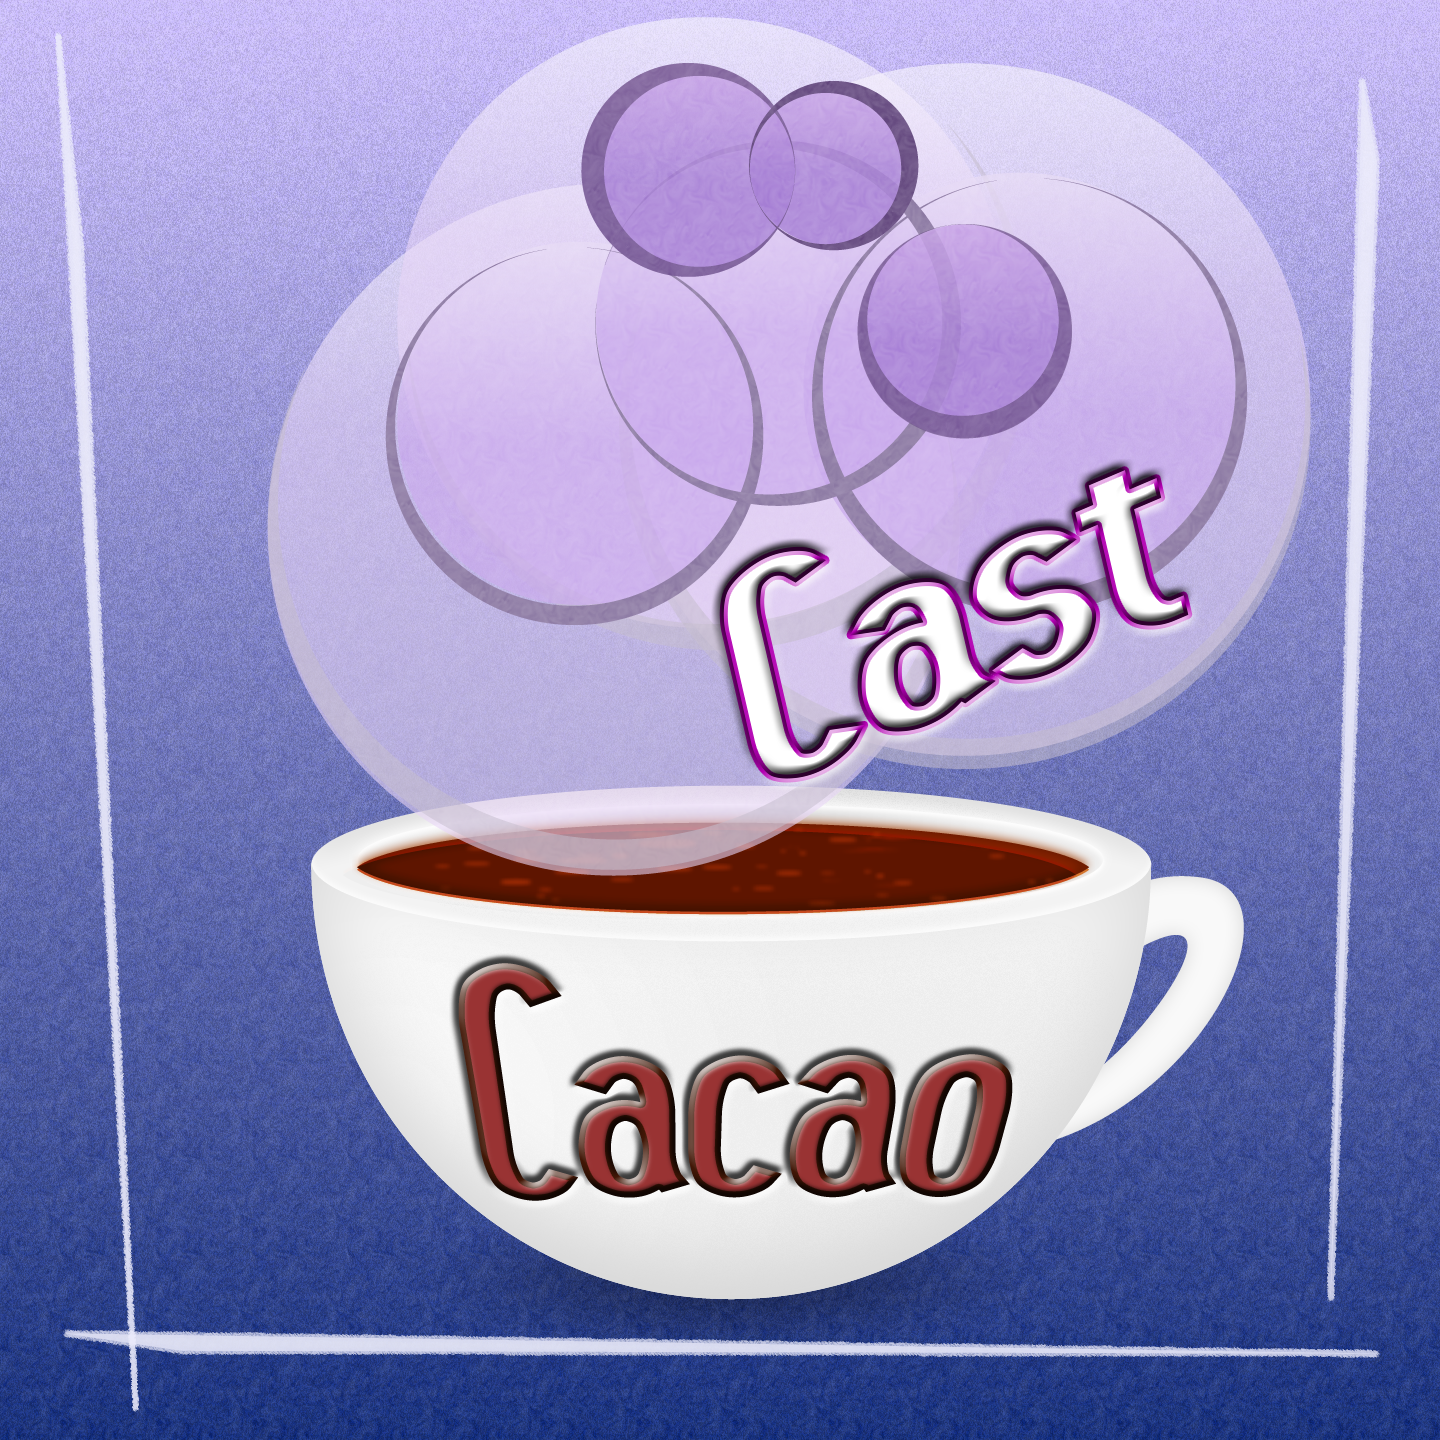 (c) Cacaocast.com